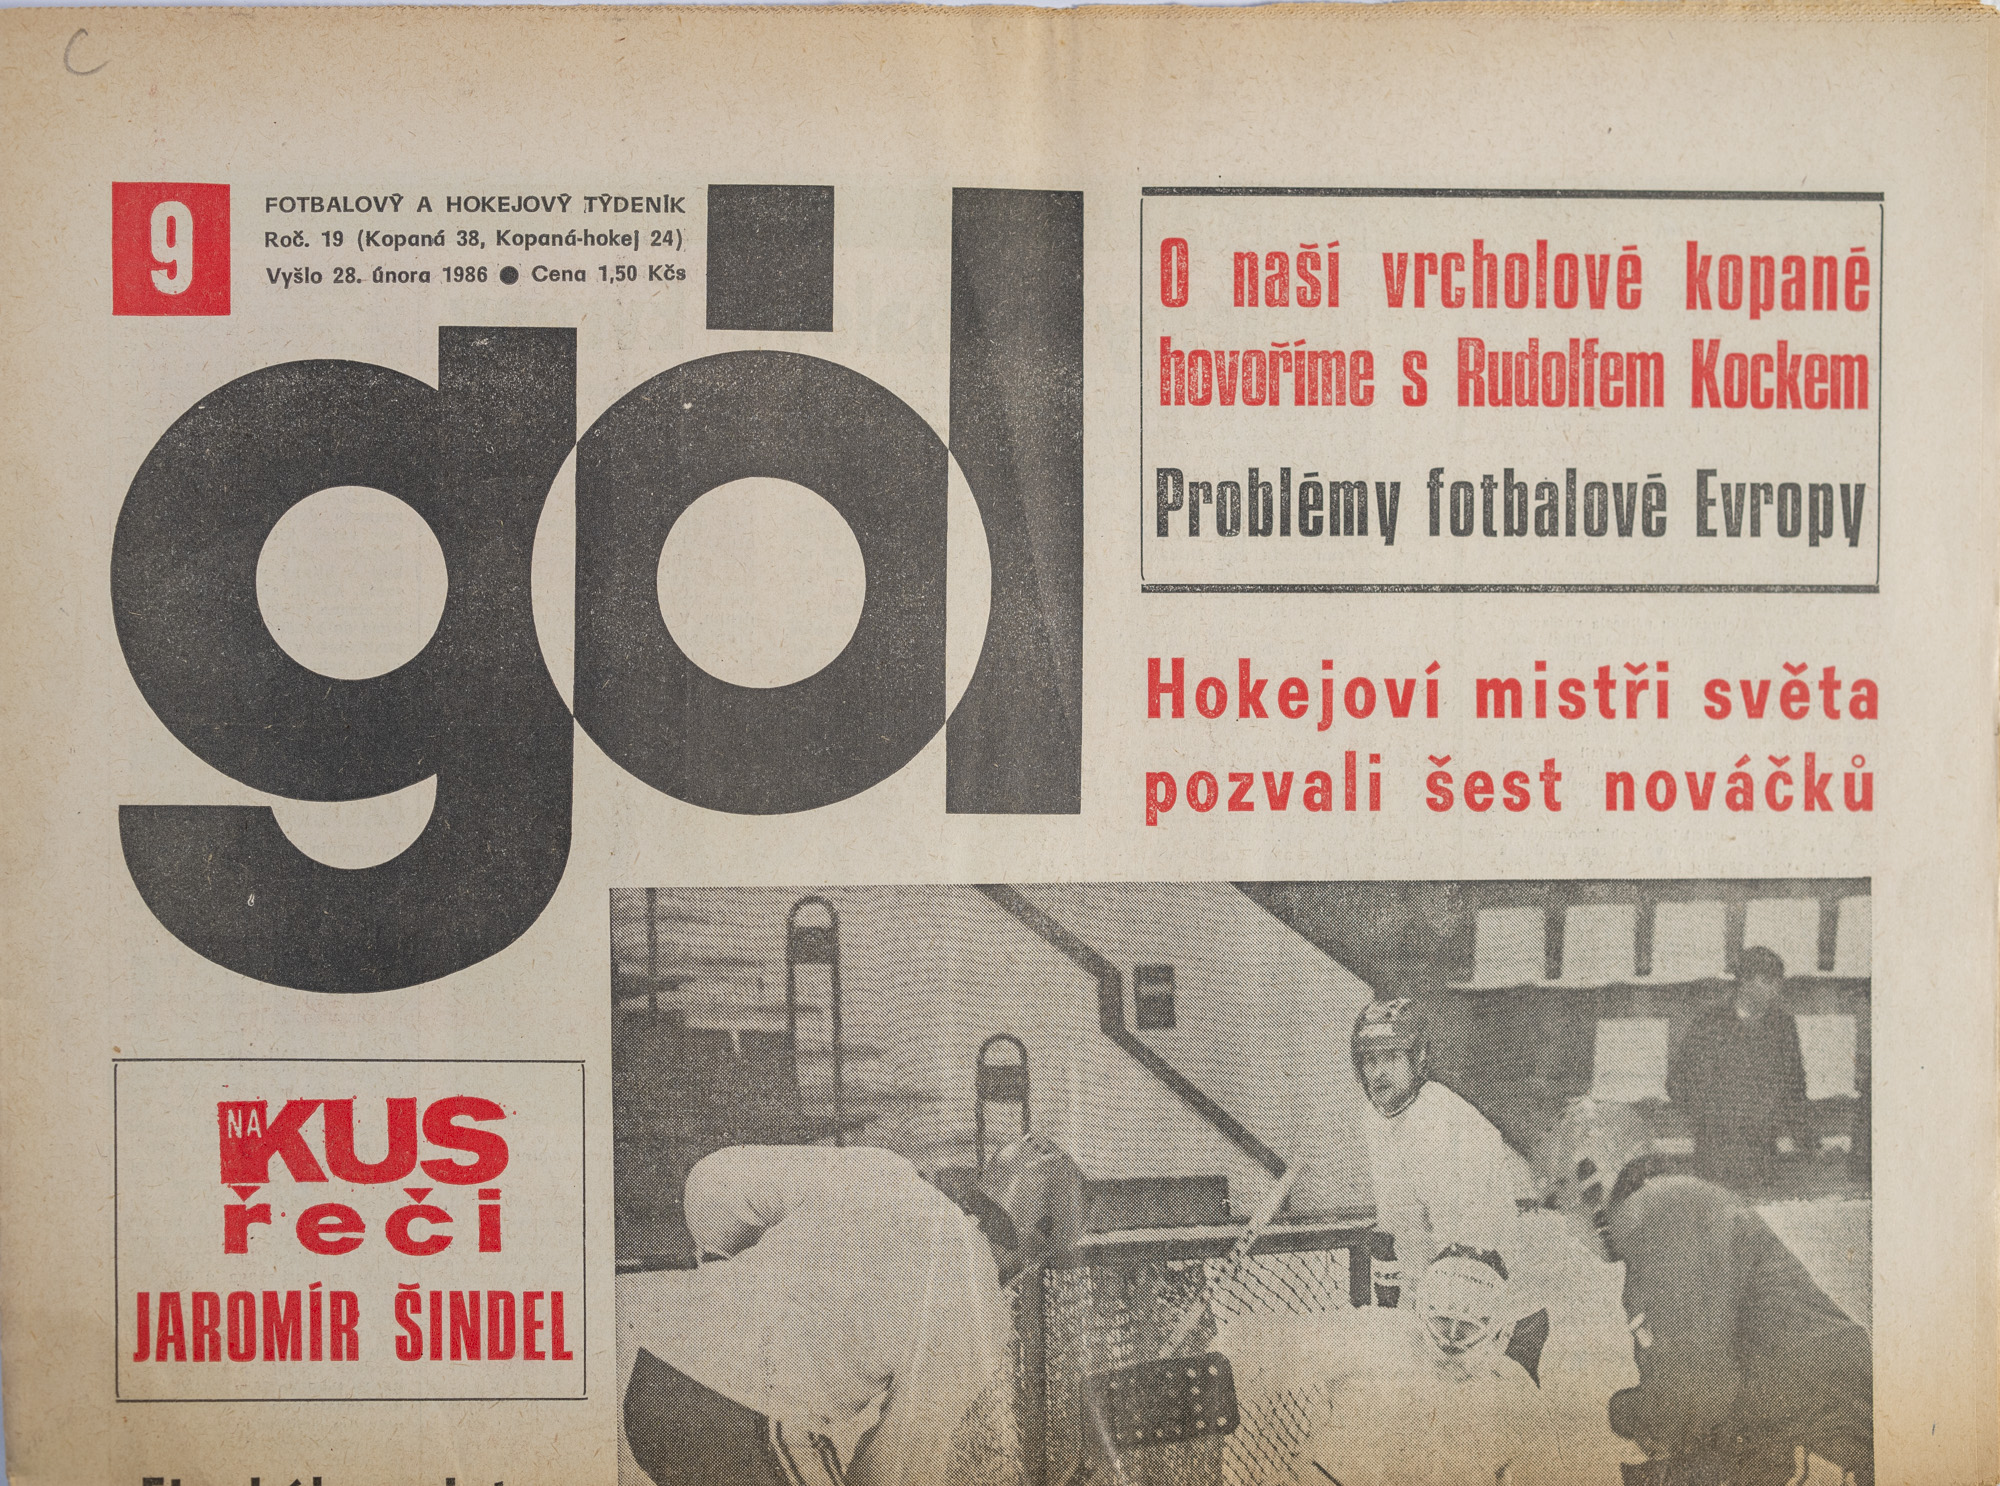 GÓL. Fotbalový a hokejový týdeník, 19/38/24/1986 č. 9